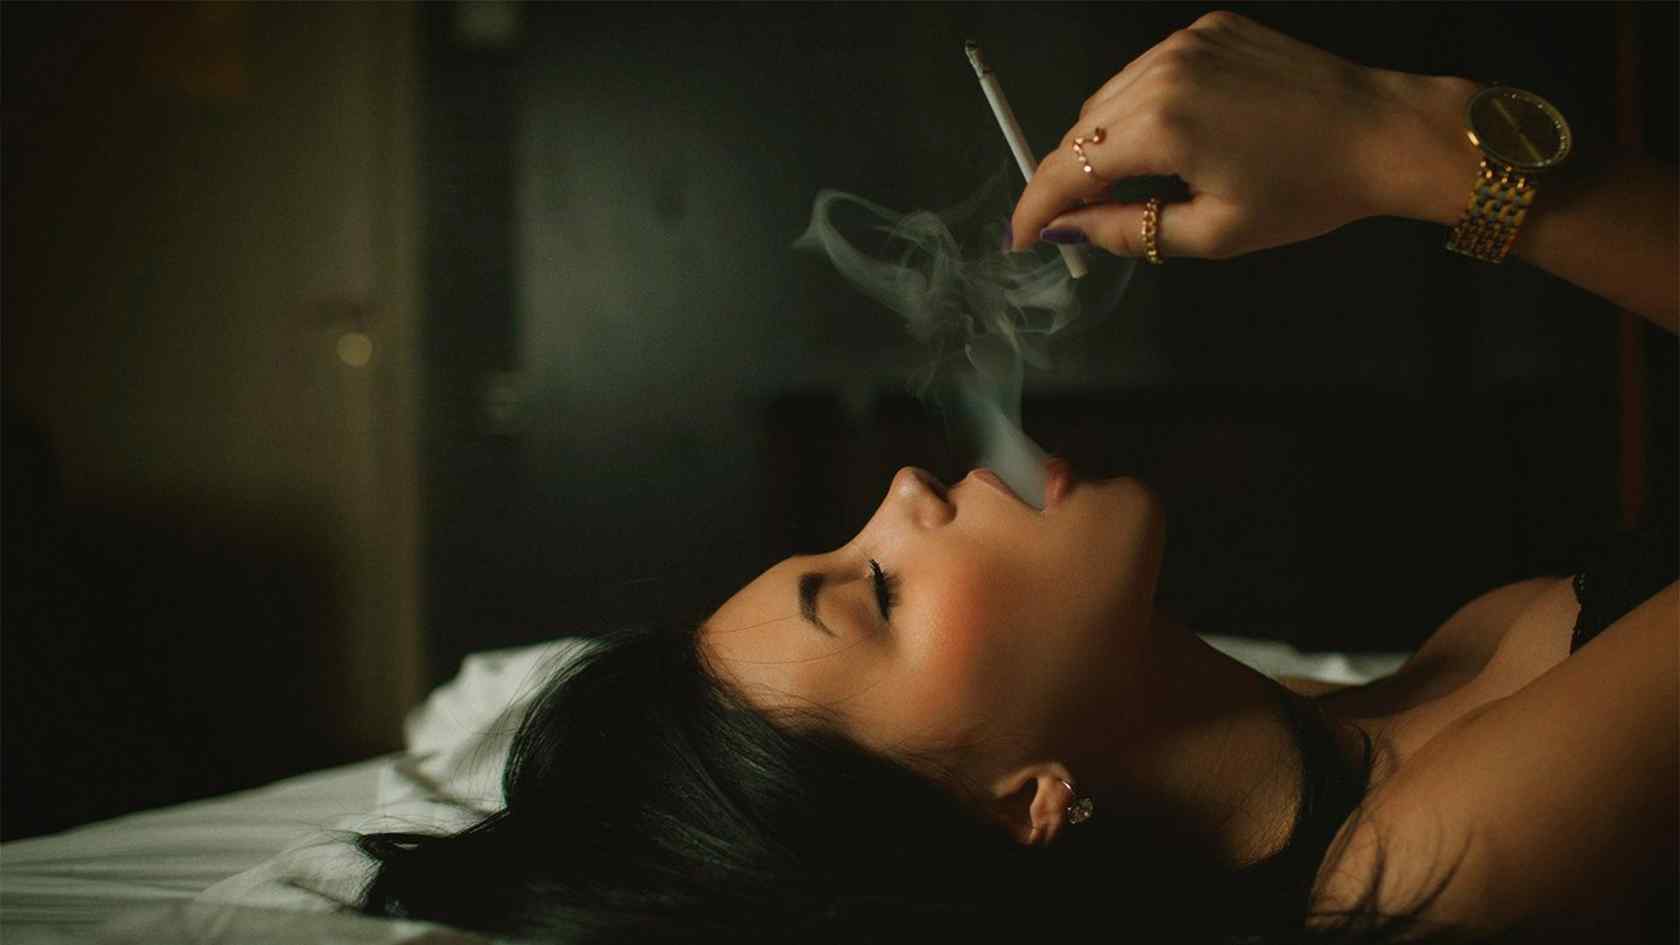 壁纸 人物 美女壁纸 > 抽烟的女人性感写真图片